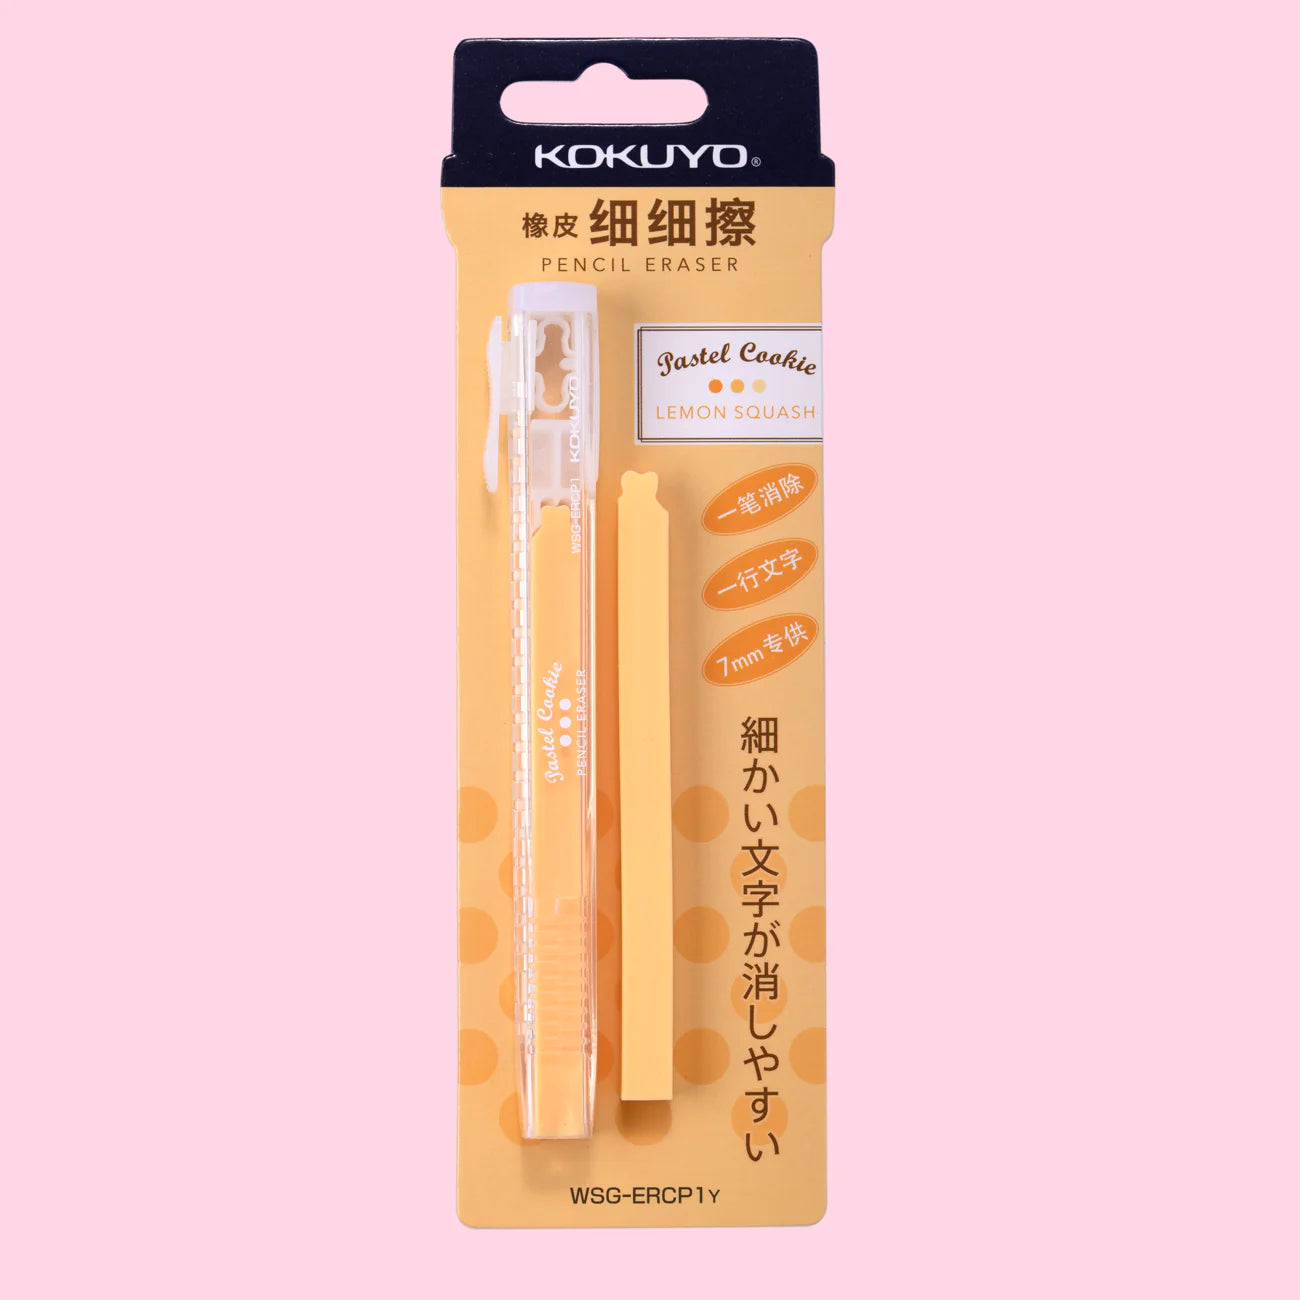 Kokuyo Pastel Cookie Retractable Erasers